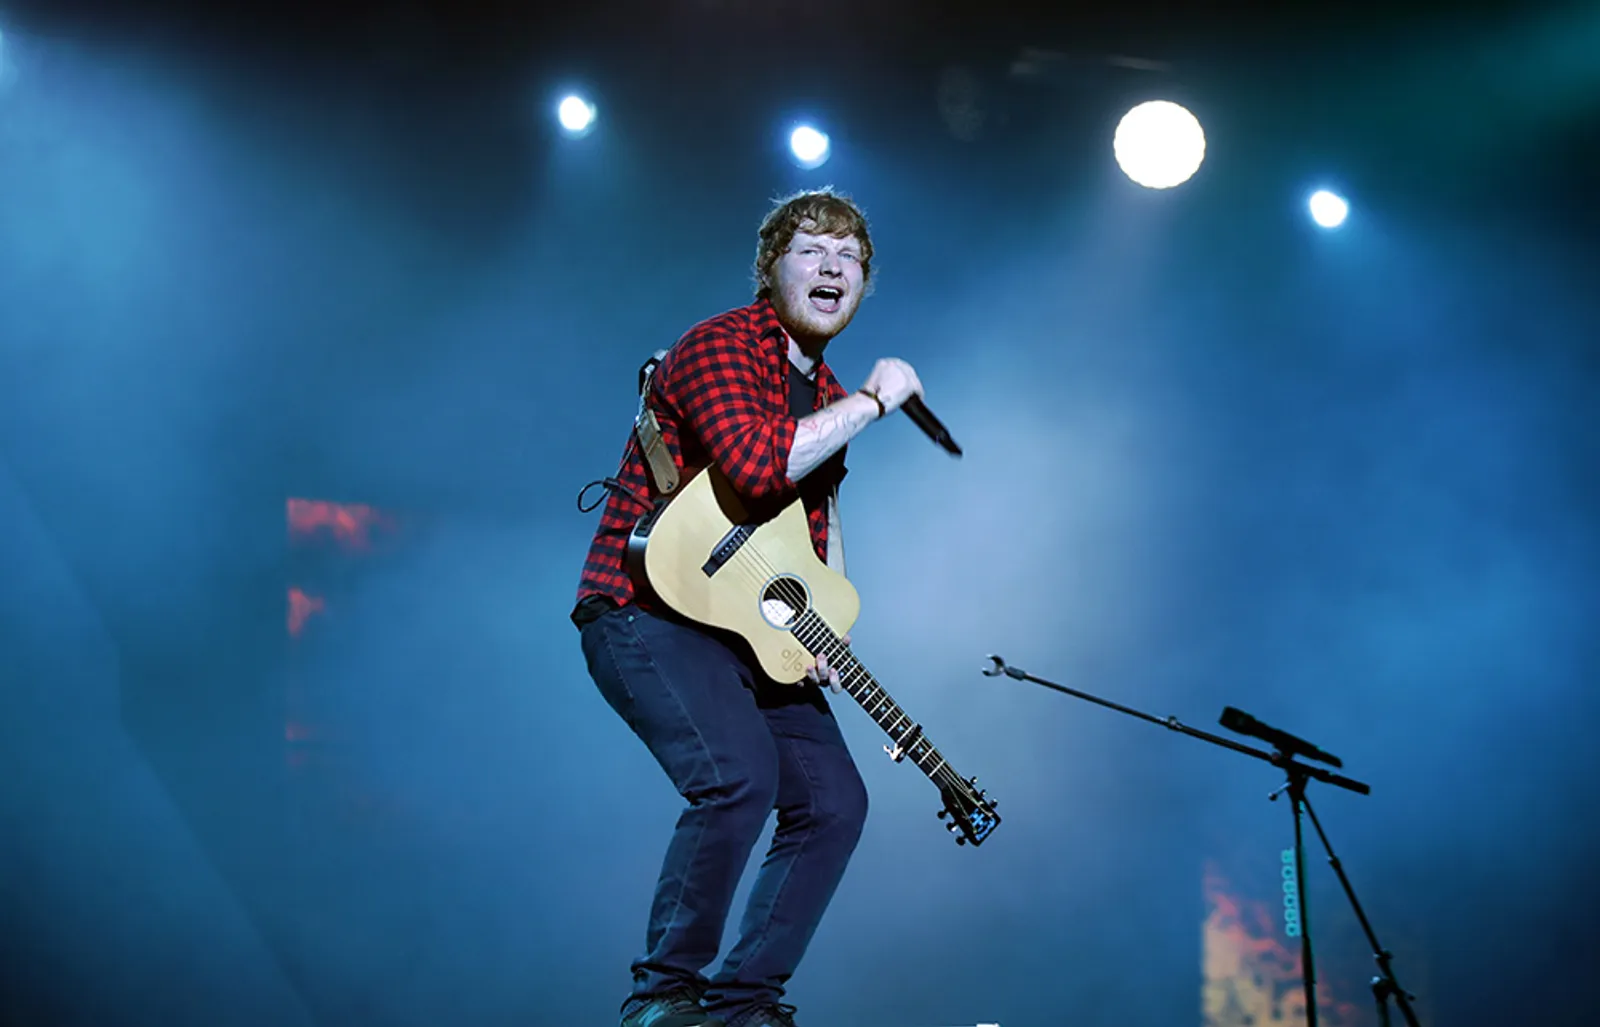 Ouch! Ed Sheeran Kecelakaan Sepeda, Bagaimana dengan Konsernya Nanti?